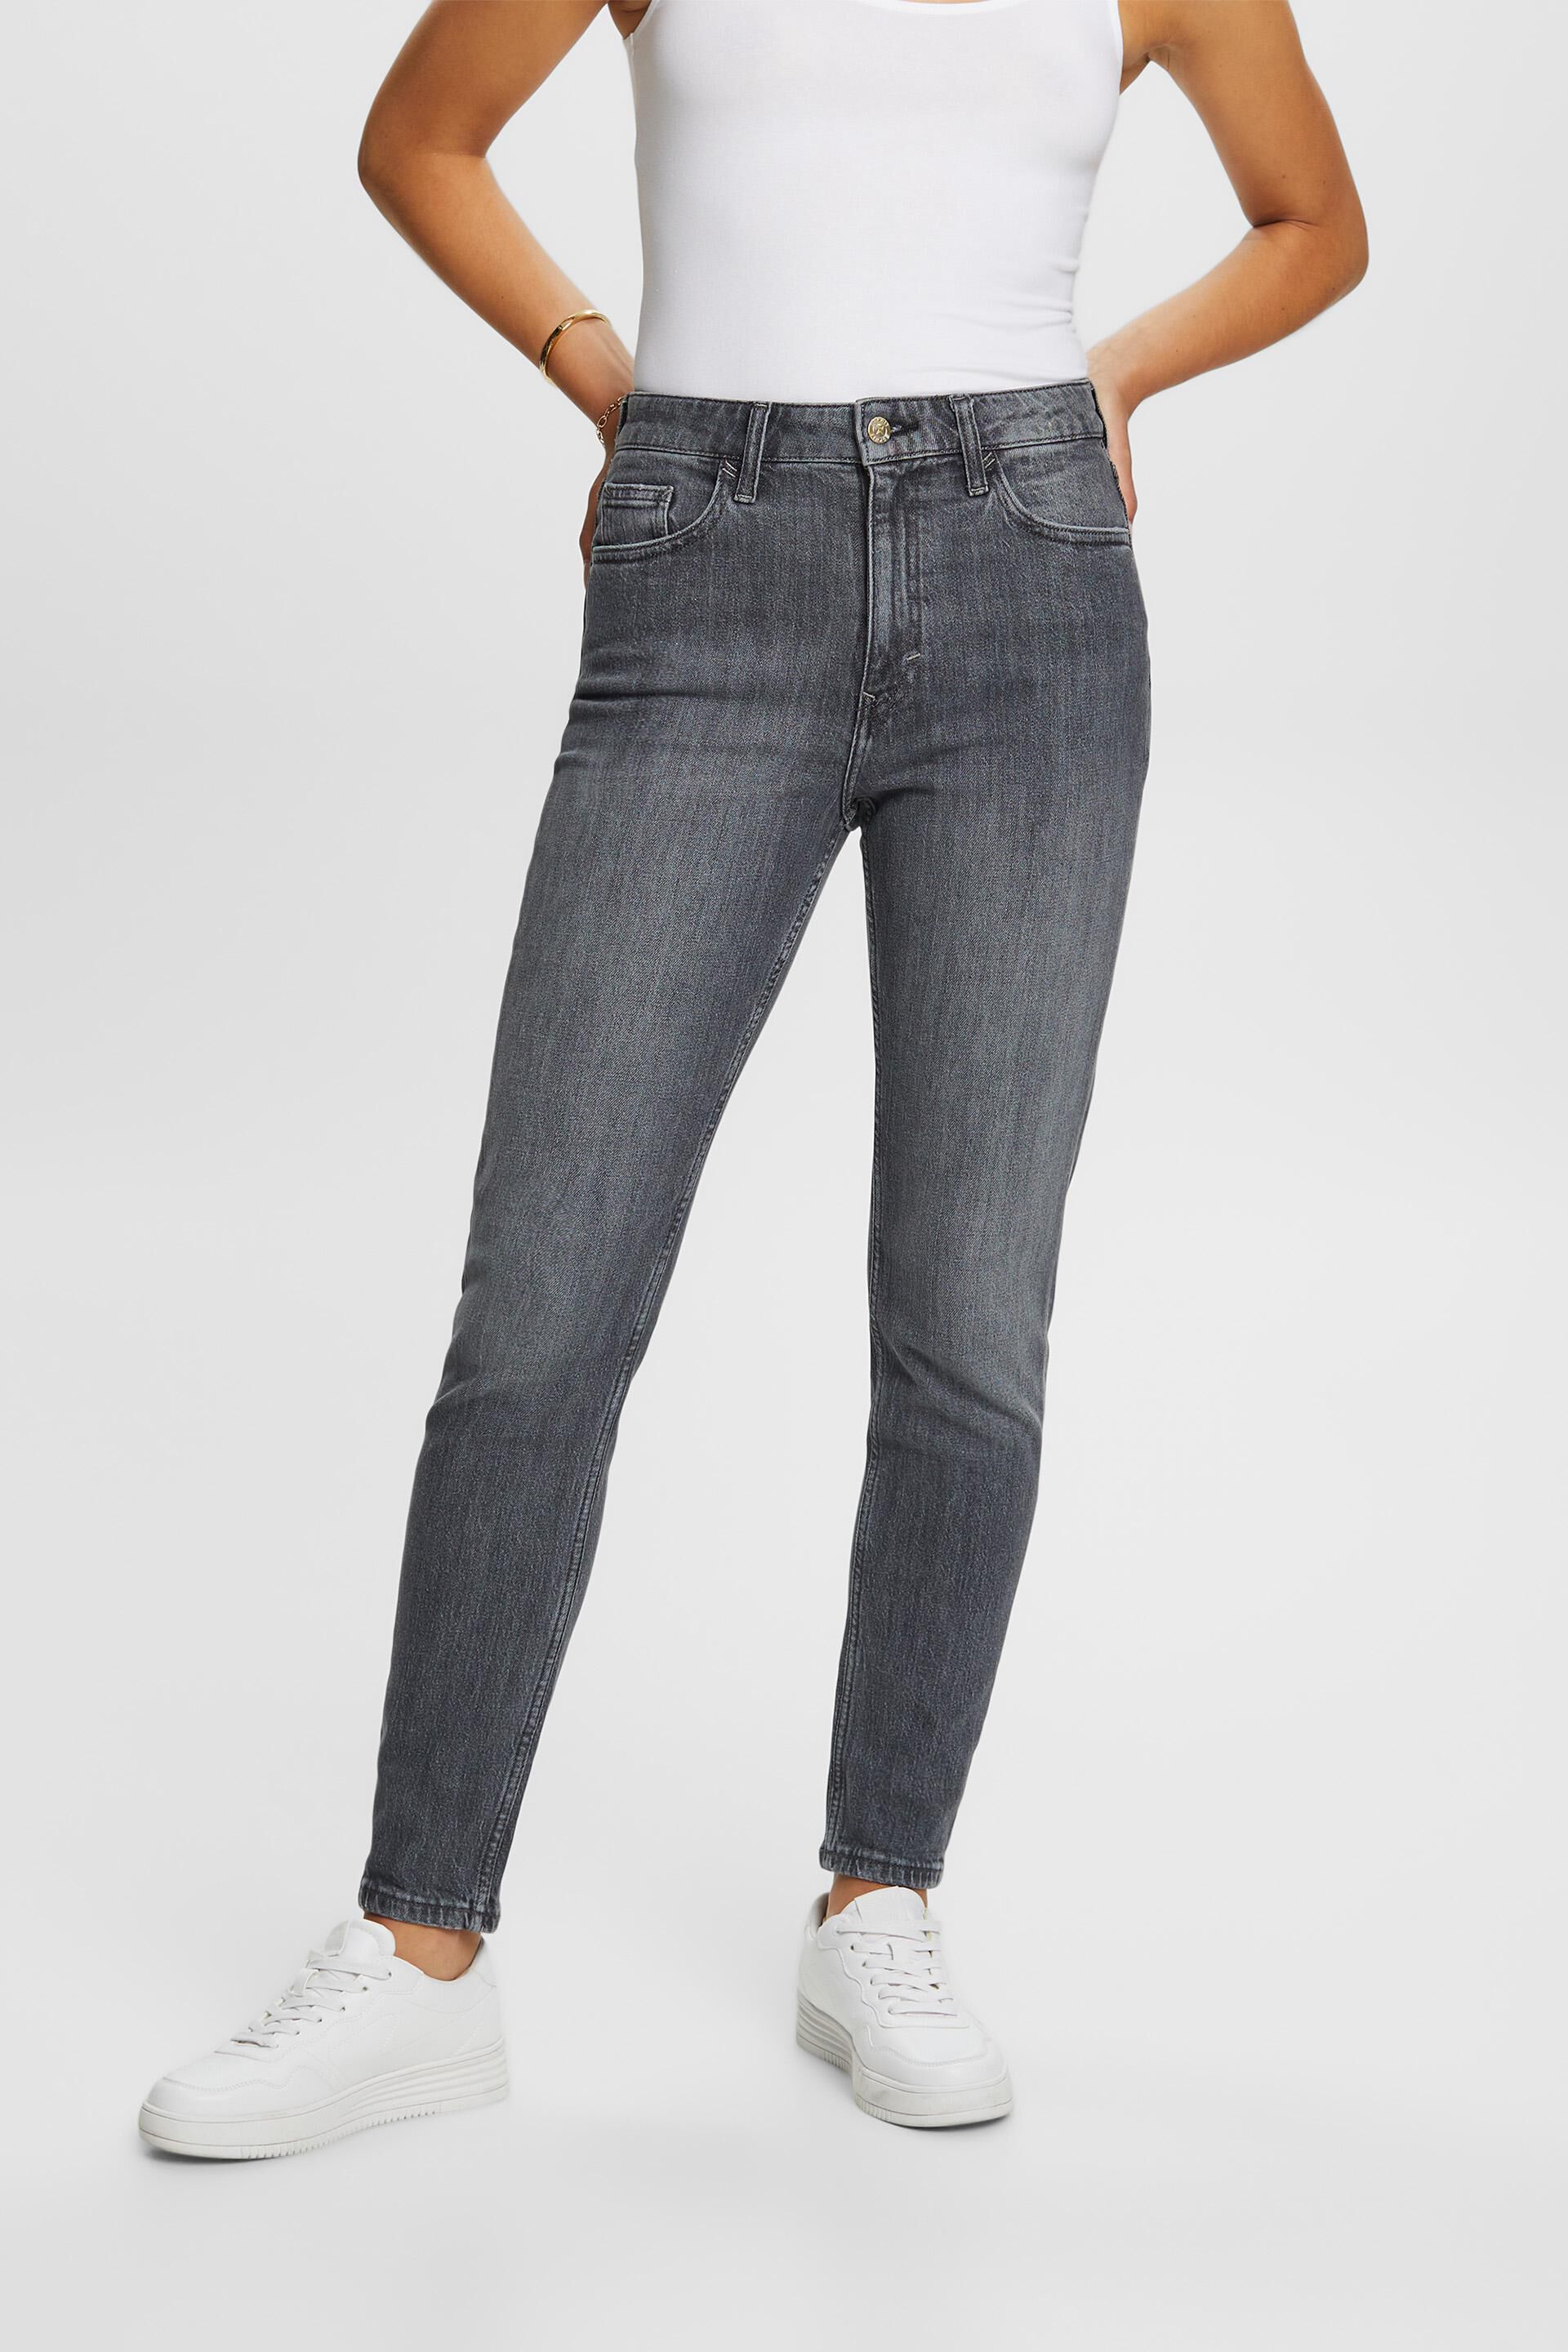 Esprit Damen Klassische Retro-Jeans mit hohem Bund